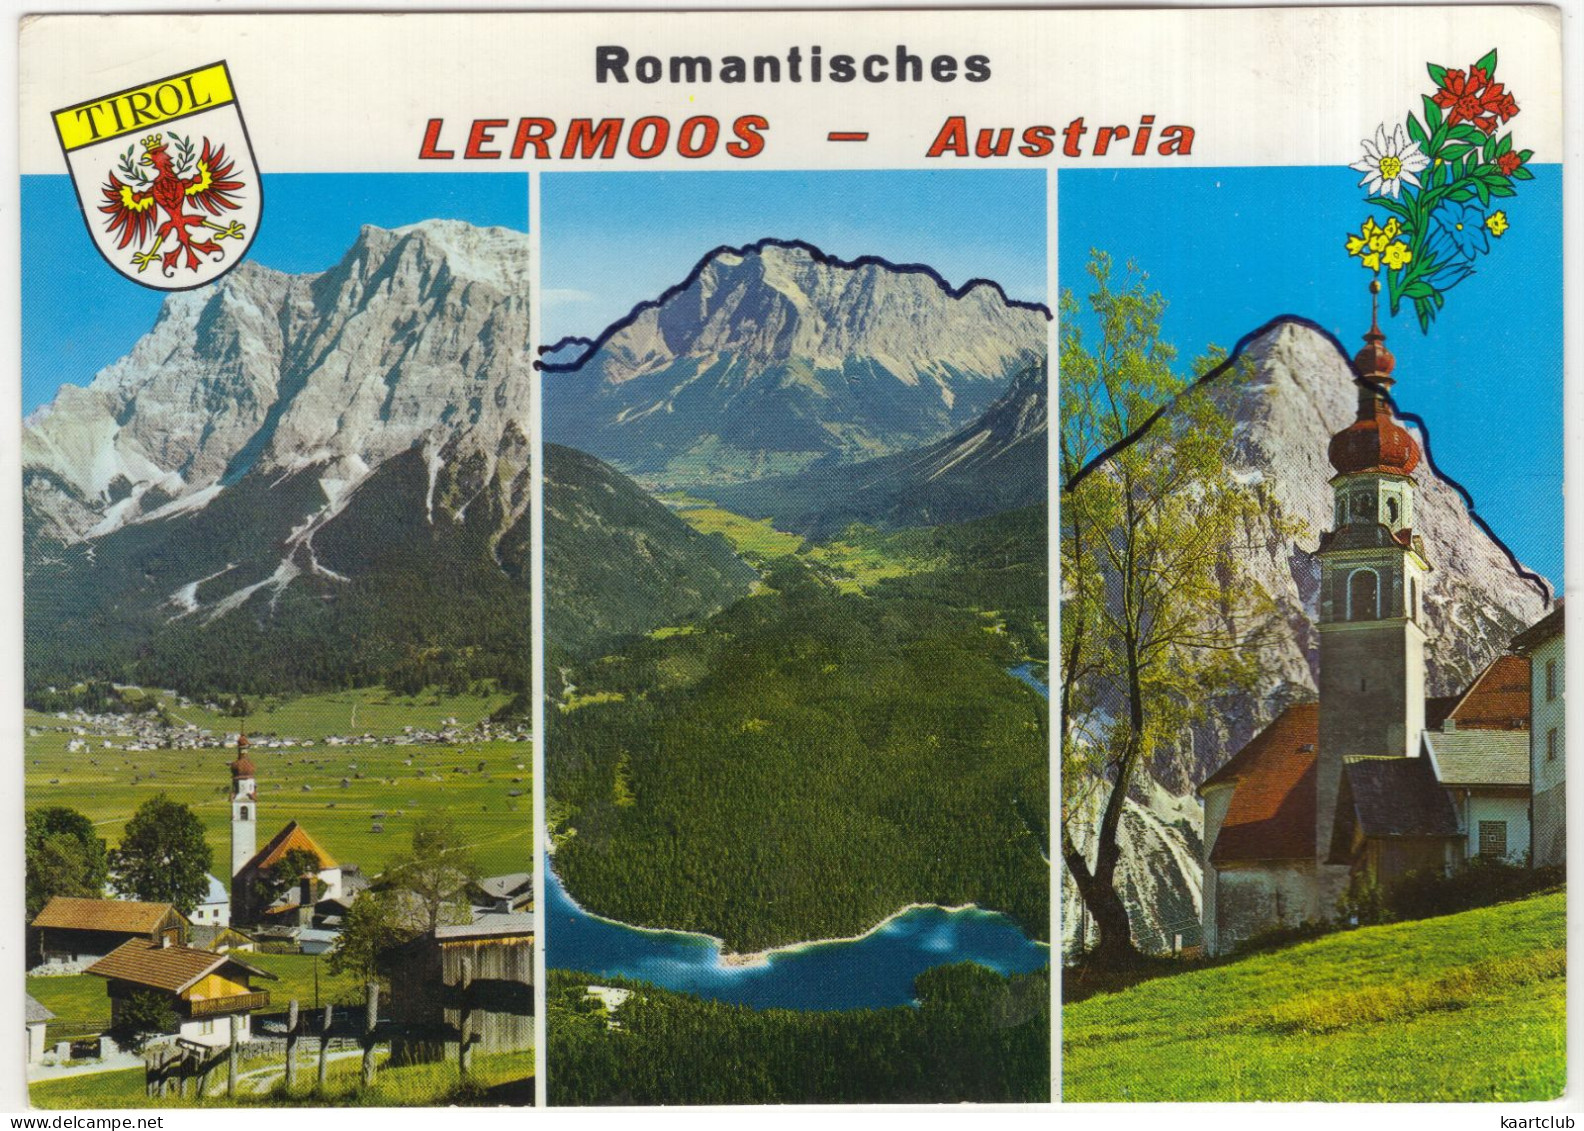 Romantisches Lermoos - Austria - (Tirol, Österreich/Austria) - Lermoos